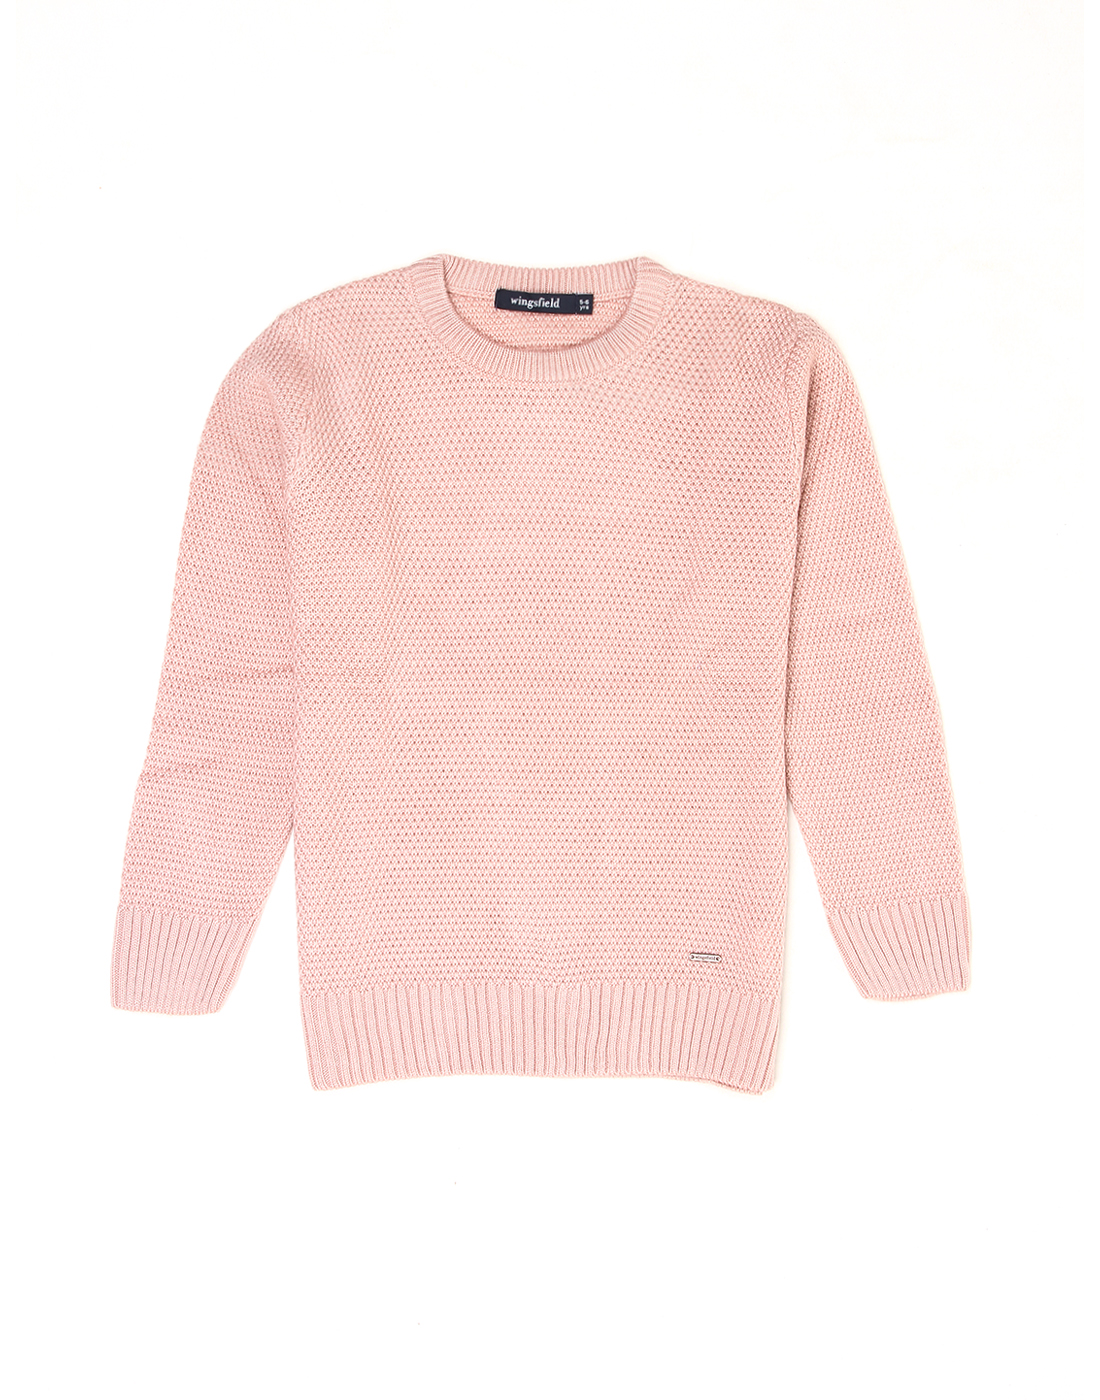 Wingsfield Boys Pink Sweater